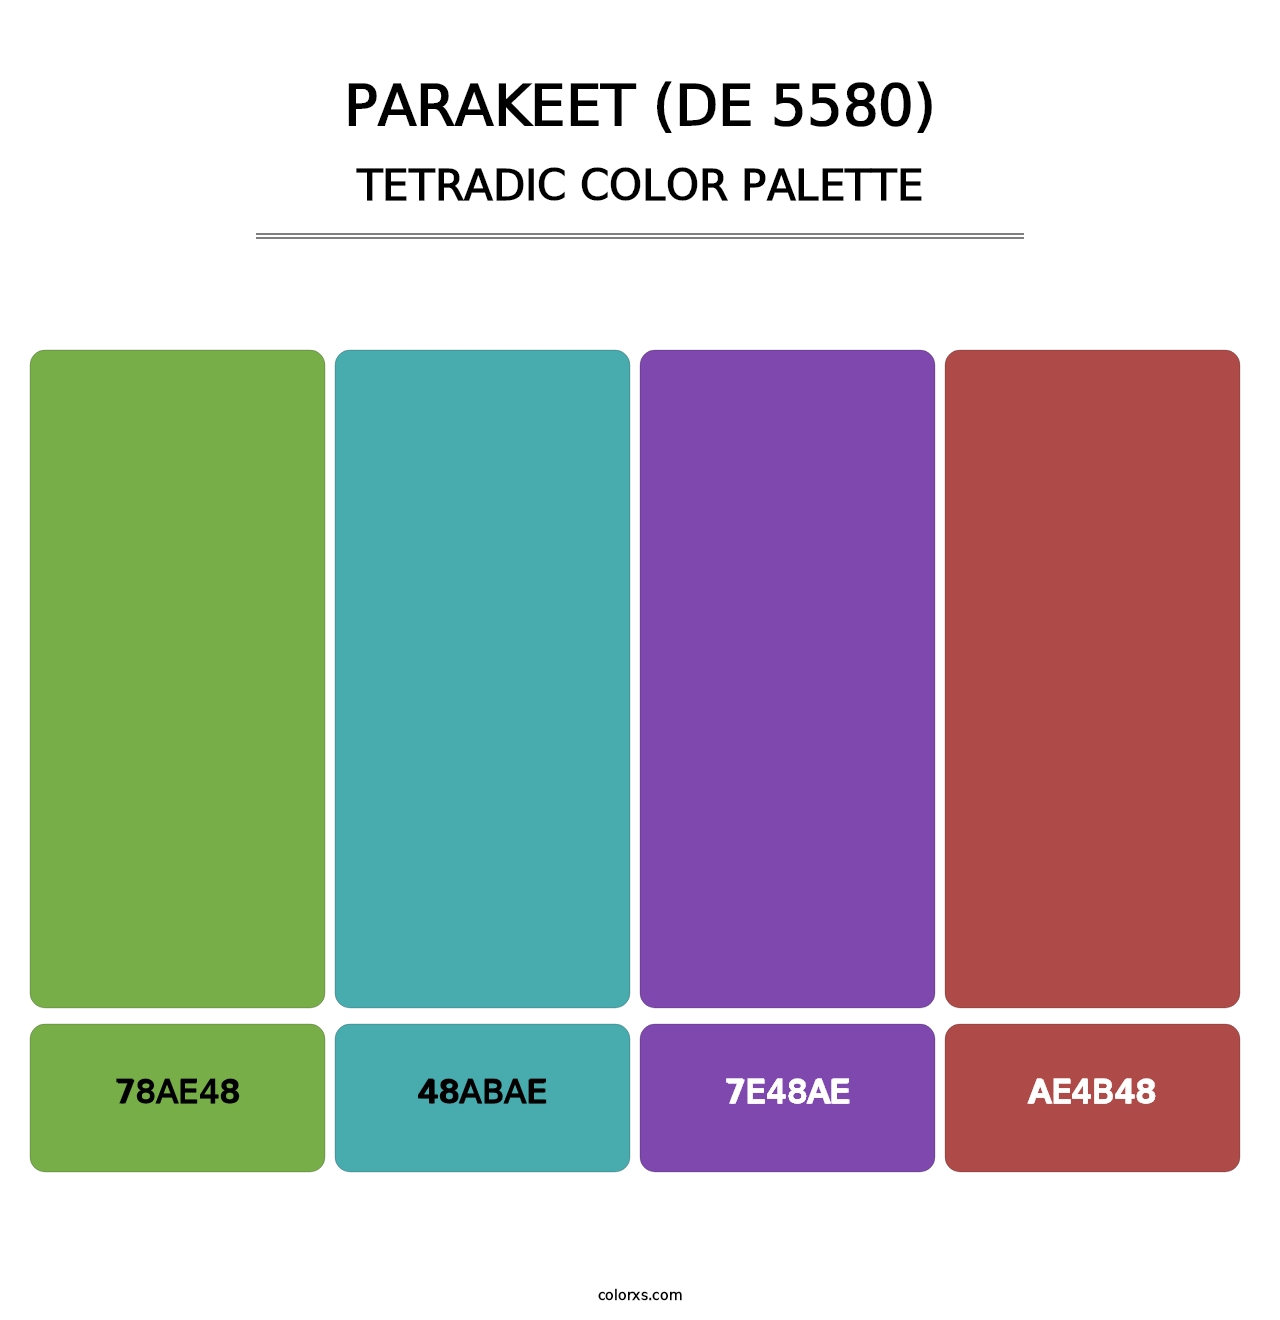 Parakeet (DE 5580) - Tetradic Color Palette